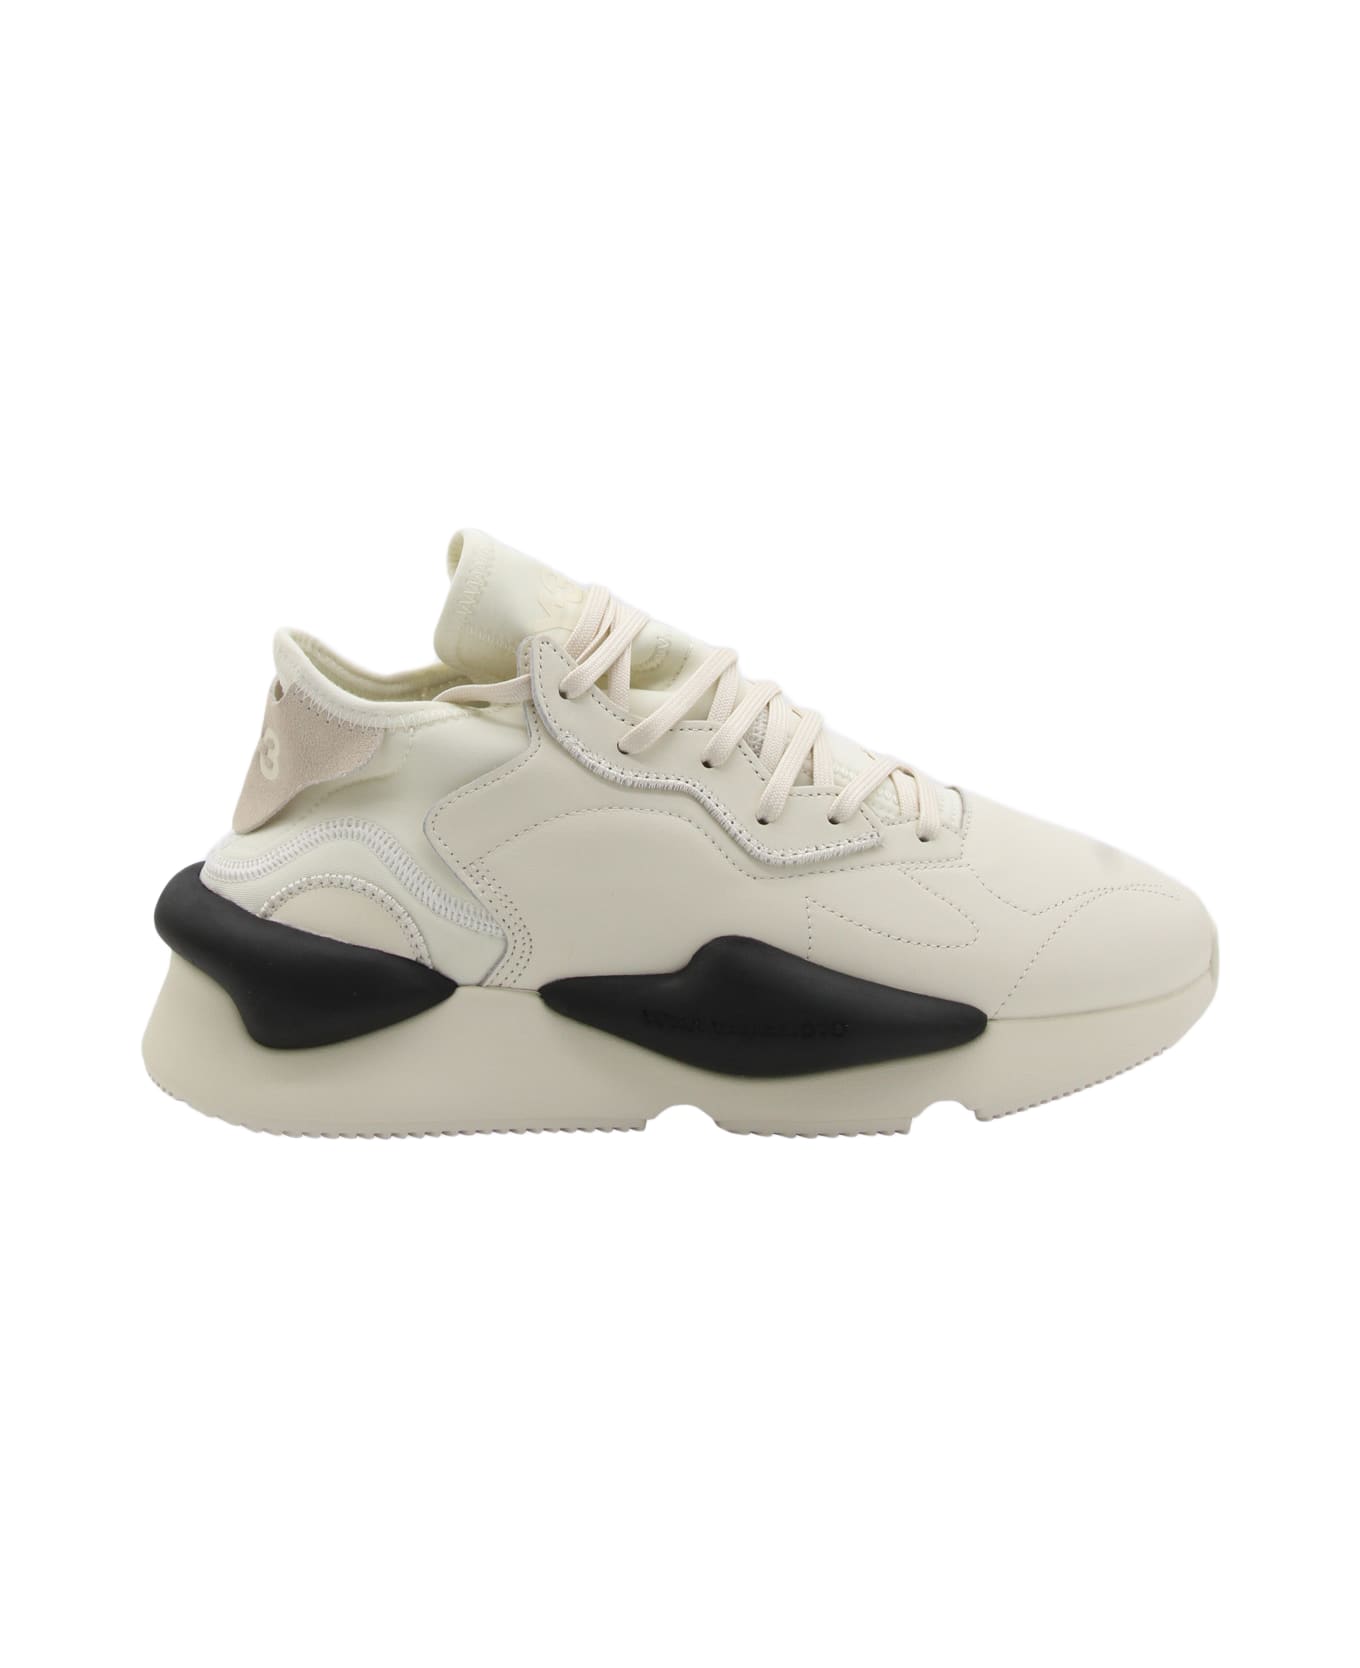 Y-3 White Leather Kaiwa Sneakers - CREAM WHITE/OFF WHITE/BLACK